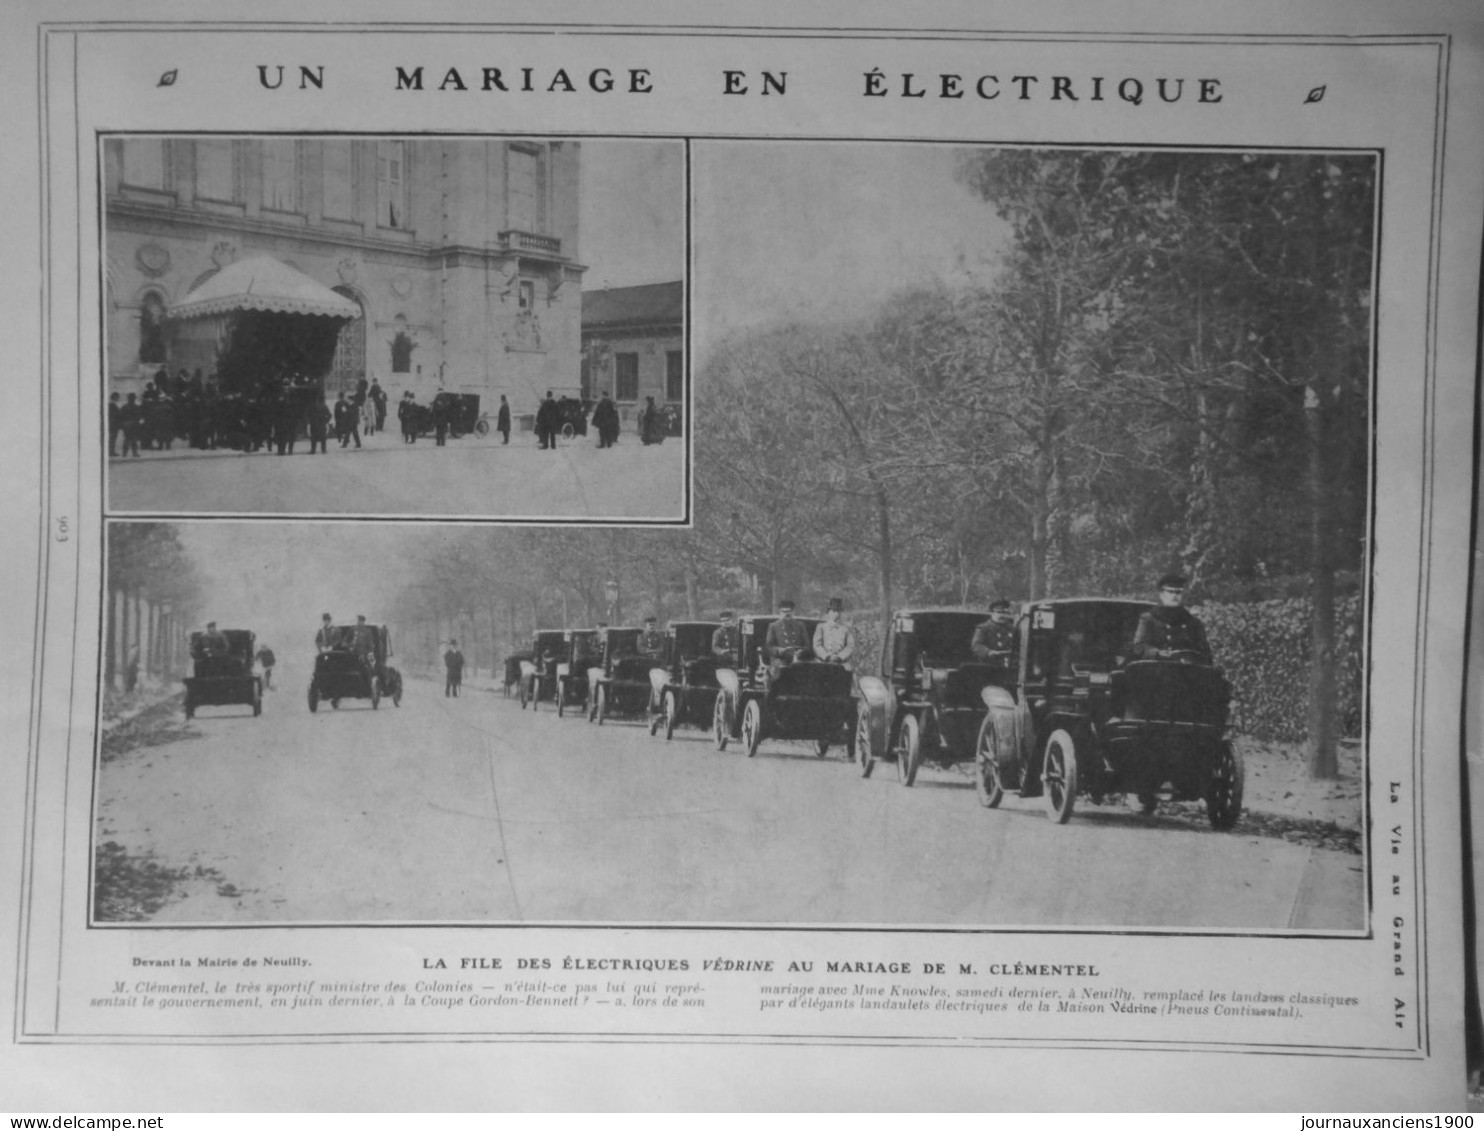 1904 1905 VOITURE ELECTRIQUE KRIEGER COTTEREAU CLEMENT 14 JOURNAUX ANCIENS